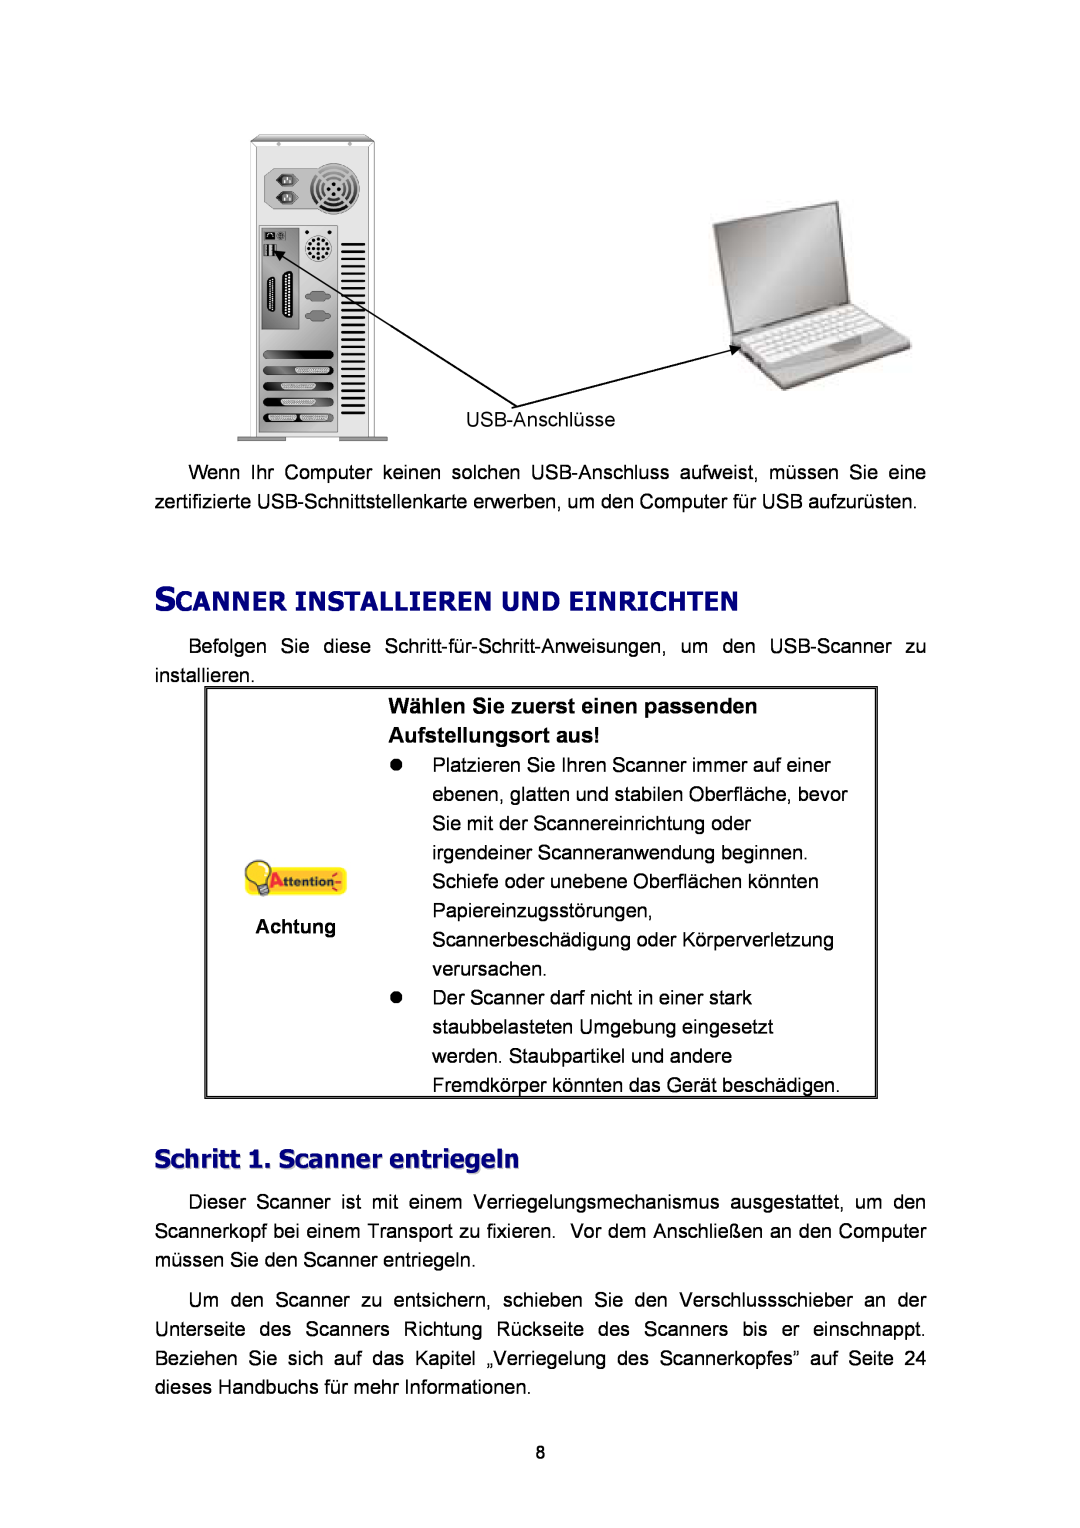 Plustek A360, Scanner-Benutzerhandbuch manual Scanner Installieren Und Einrichten, Schritt 1. Scanner entriegeln 